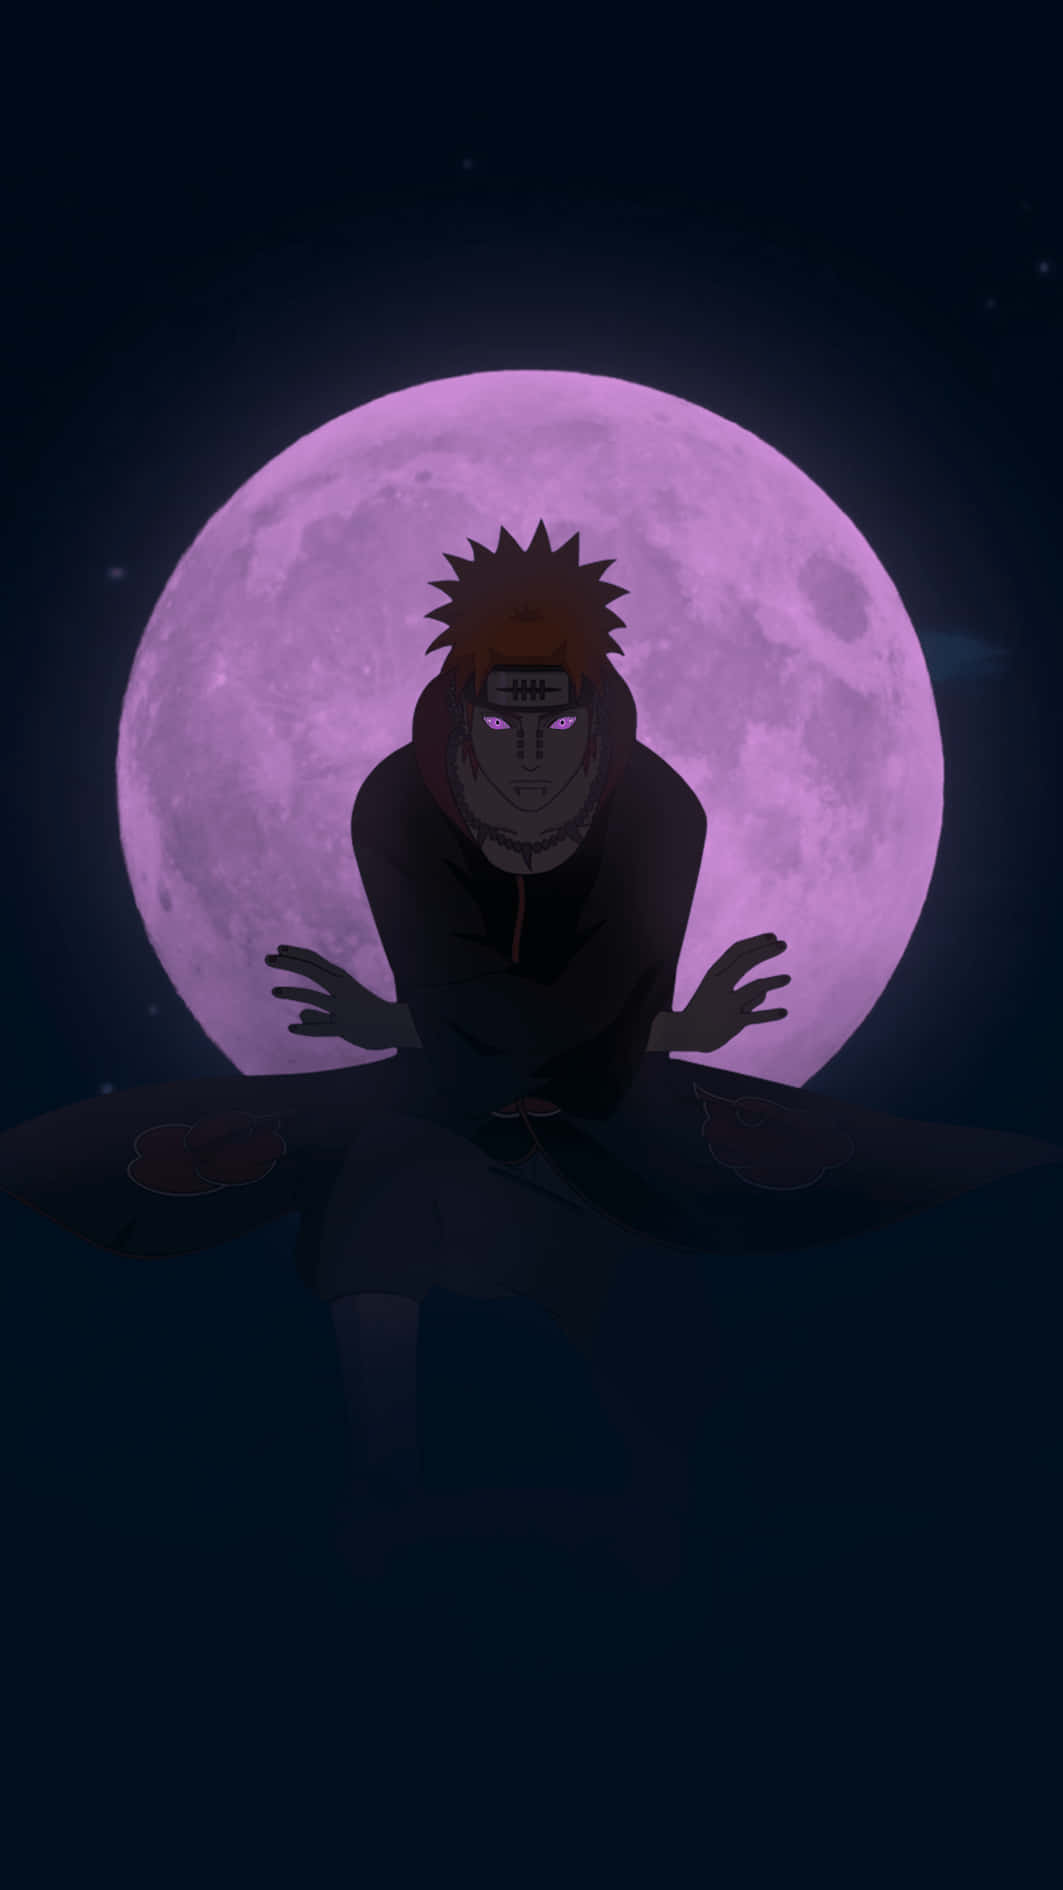 Onaruto - Naruto - Naruto - Naruto - Naruto Kan Vara En Fantastisk Dator- Eller Mobilskärmsbakgrund För Fans Av Anime. Det Är En Populär Och Igenkännbar Karaktär Från Manga- Och Animeserien Som Har Blivit En Kultklassiker Bland Fans Över Hela Världen. Med Sin Lysande Orange Dräkt Och Ikoniska Huvudband, Skulle Naruto Definitivt Göra En Imponerande Bakgrund För Någon Som Är Ett Fan Av Serien. Så Om Du Är En Av Dem, Överväg Att Använda Naruto Som Din Nästa Bakgrundsbild! Wallpaper